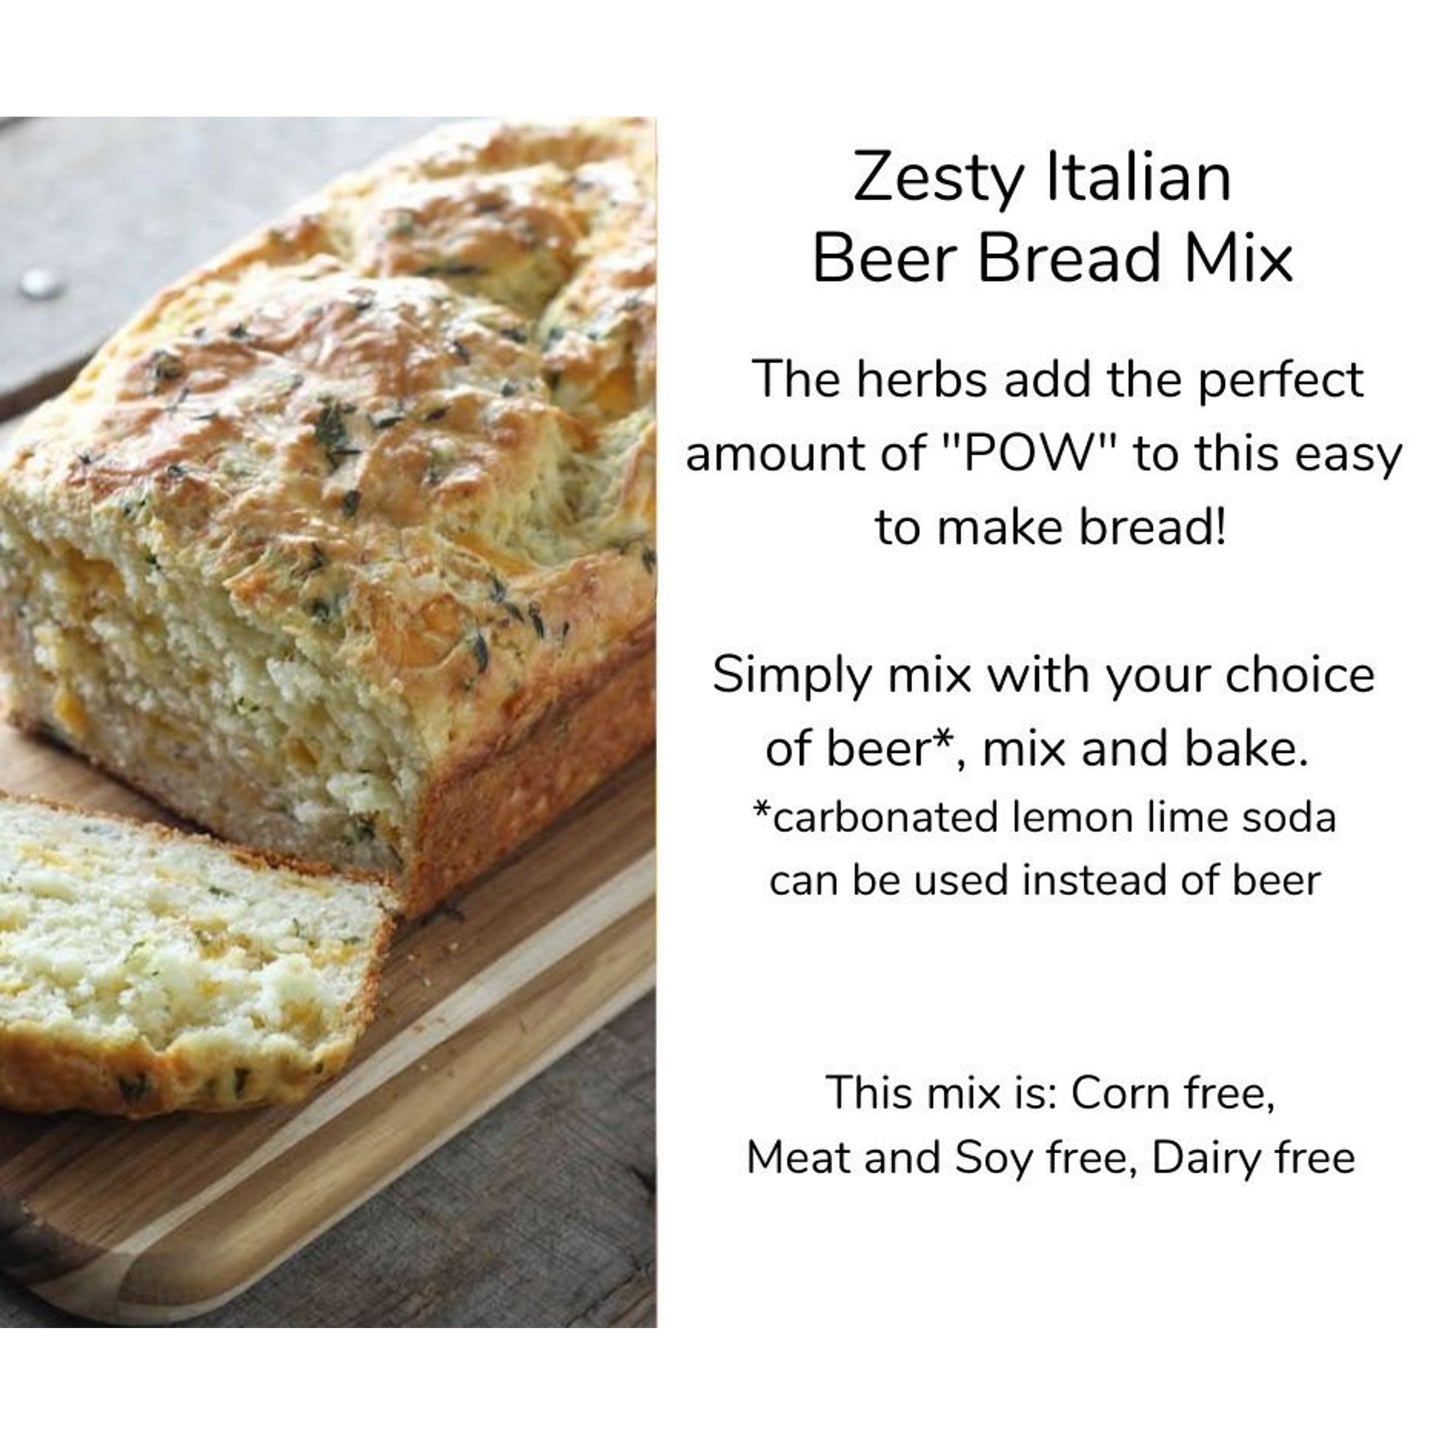 PRE-ORDER Zesty Italian Beer Bread Mix - Kitcheneez Mixes & More!